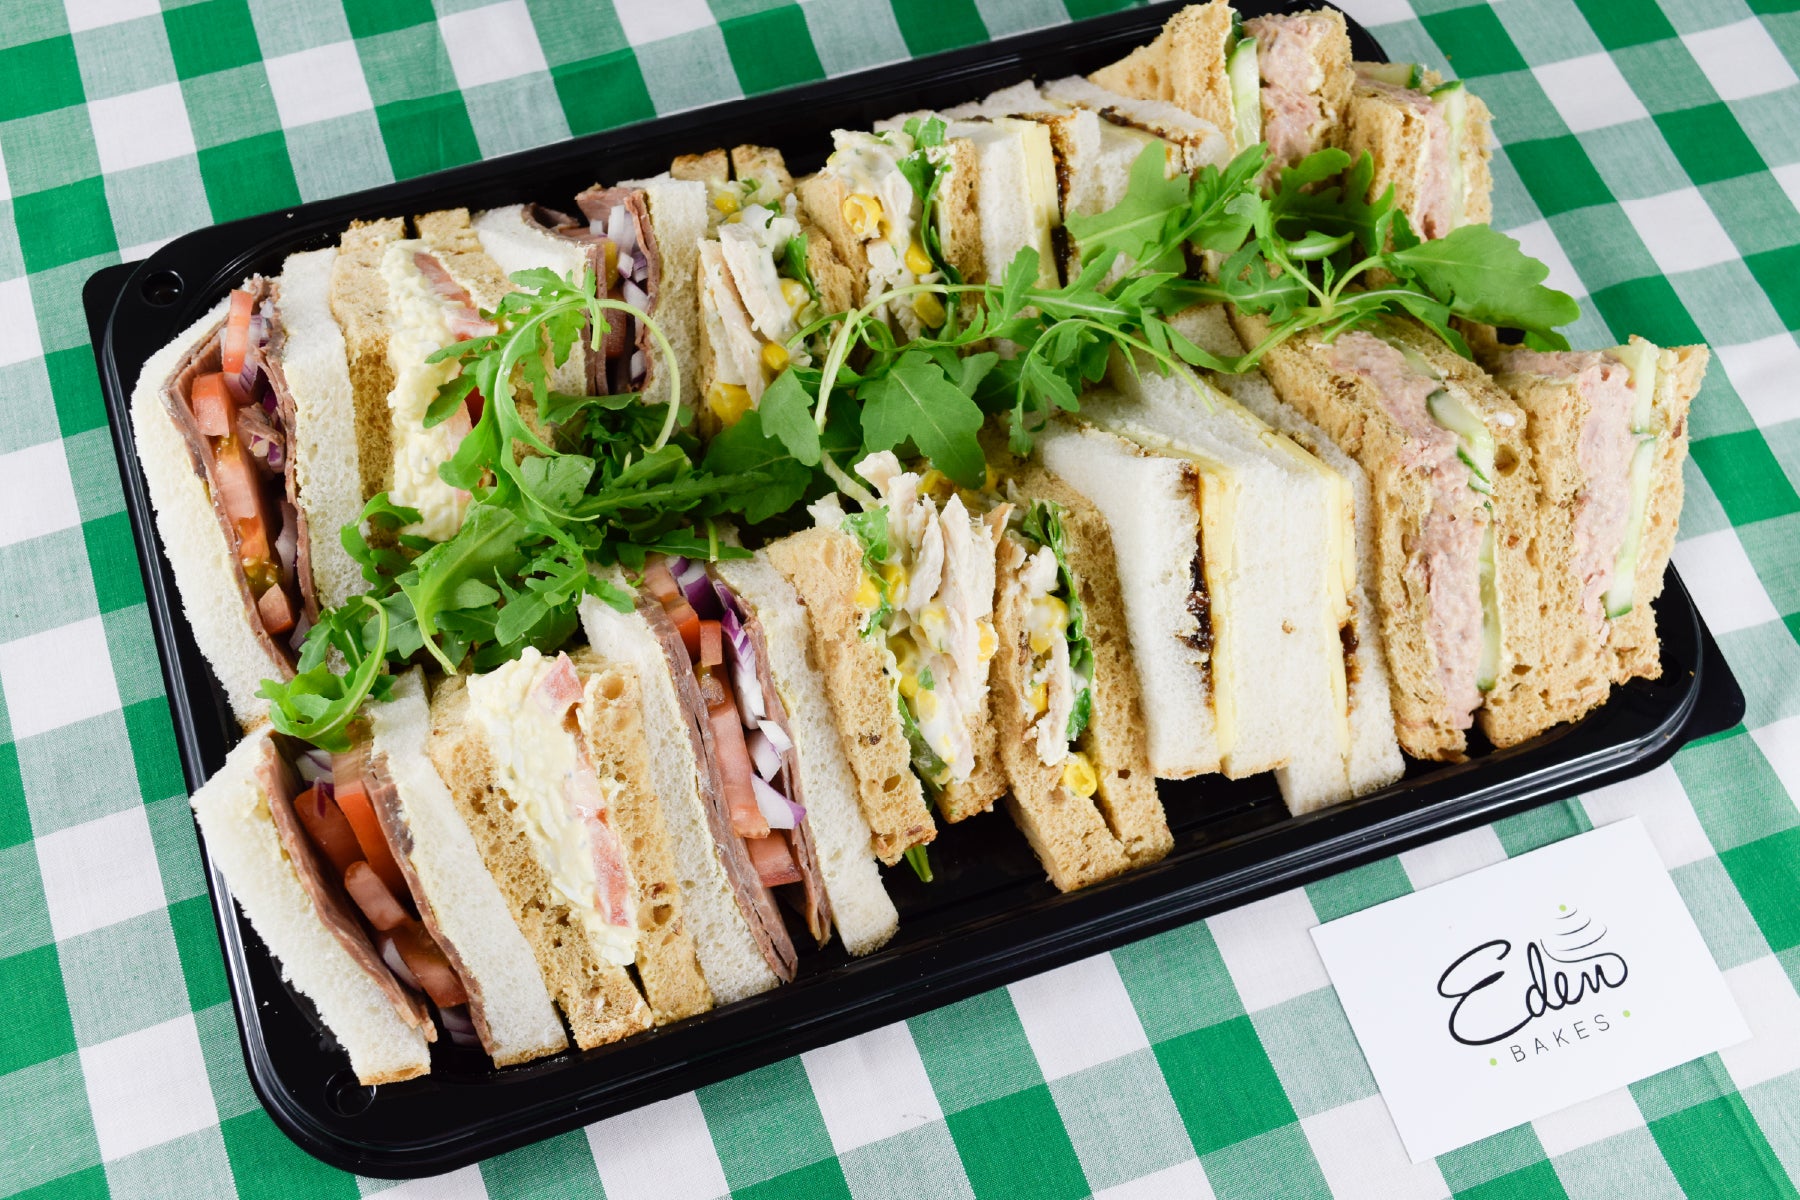 Eden Bakes, Sandwich platter, Edenbridge